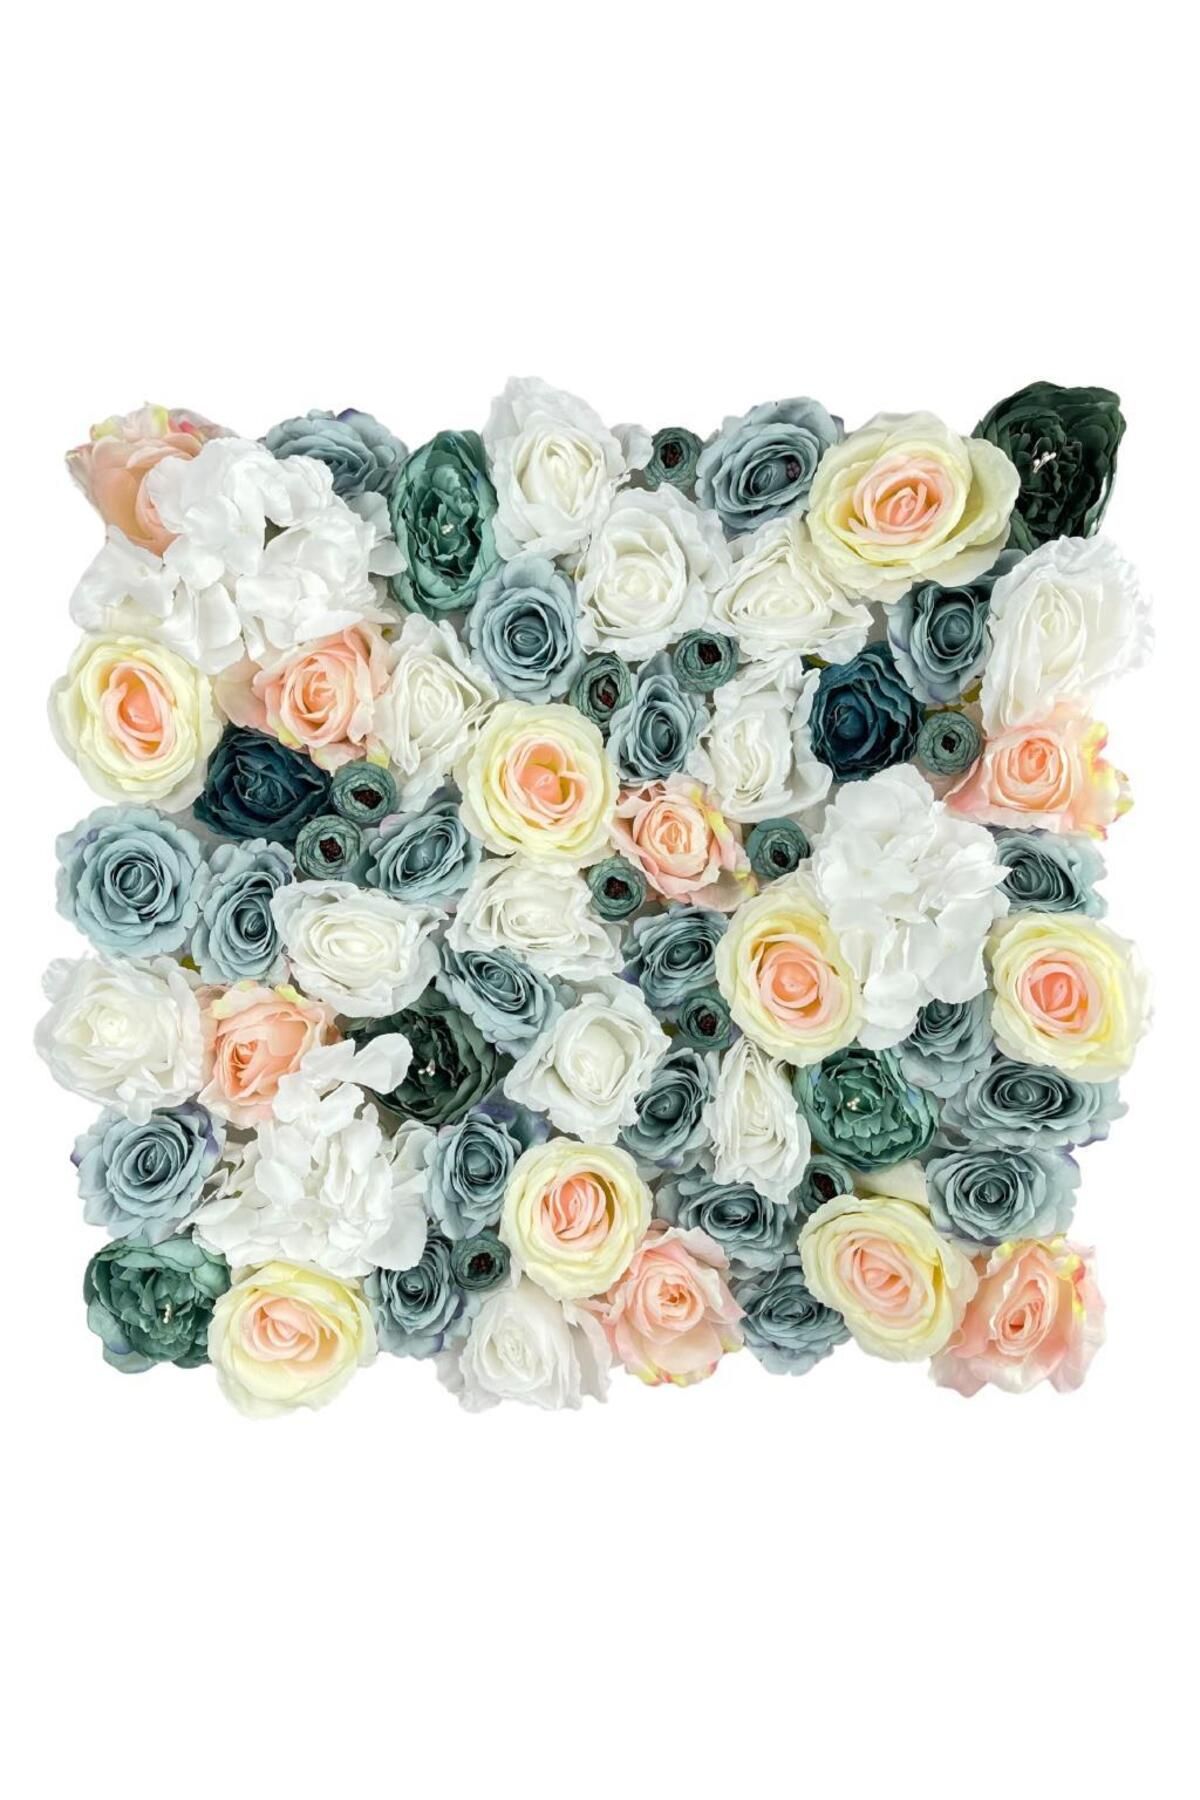 Nettenevime Yapay Çiçek Dekoratif Gül Paneli Mavi Beyaz Pembe Renkleri Dik Duvar Kaplama Gül Duvarı 55x55